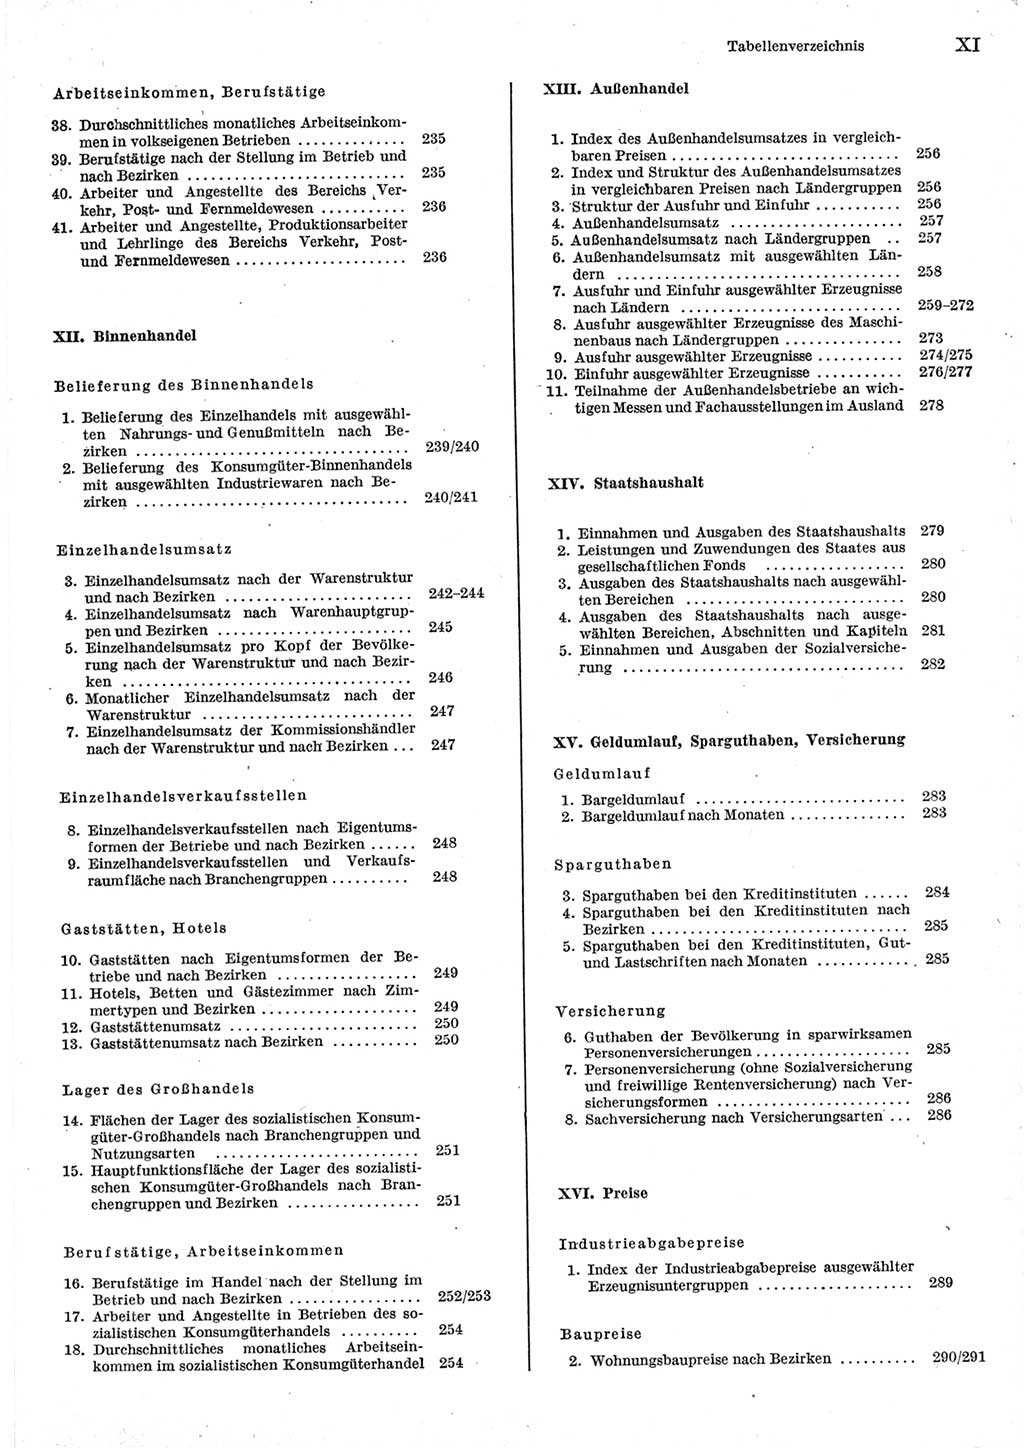 Statistisches Jahrbuch der Deutschen Demokratischen Republik (DDR) 1977, Seite 11 (Stat. Jb. DDR 1977, S. 11)